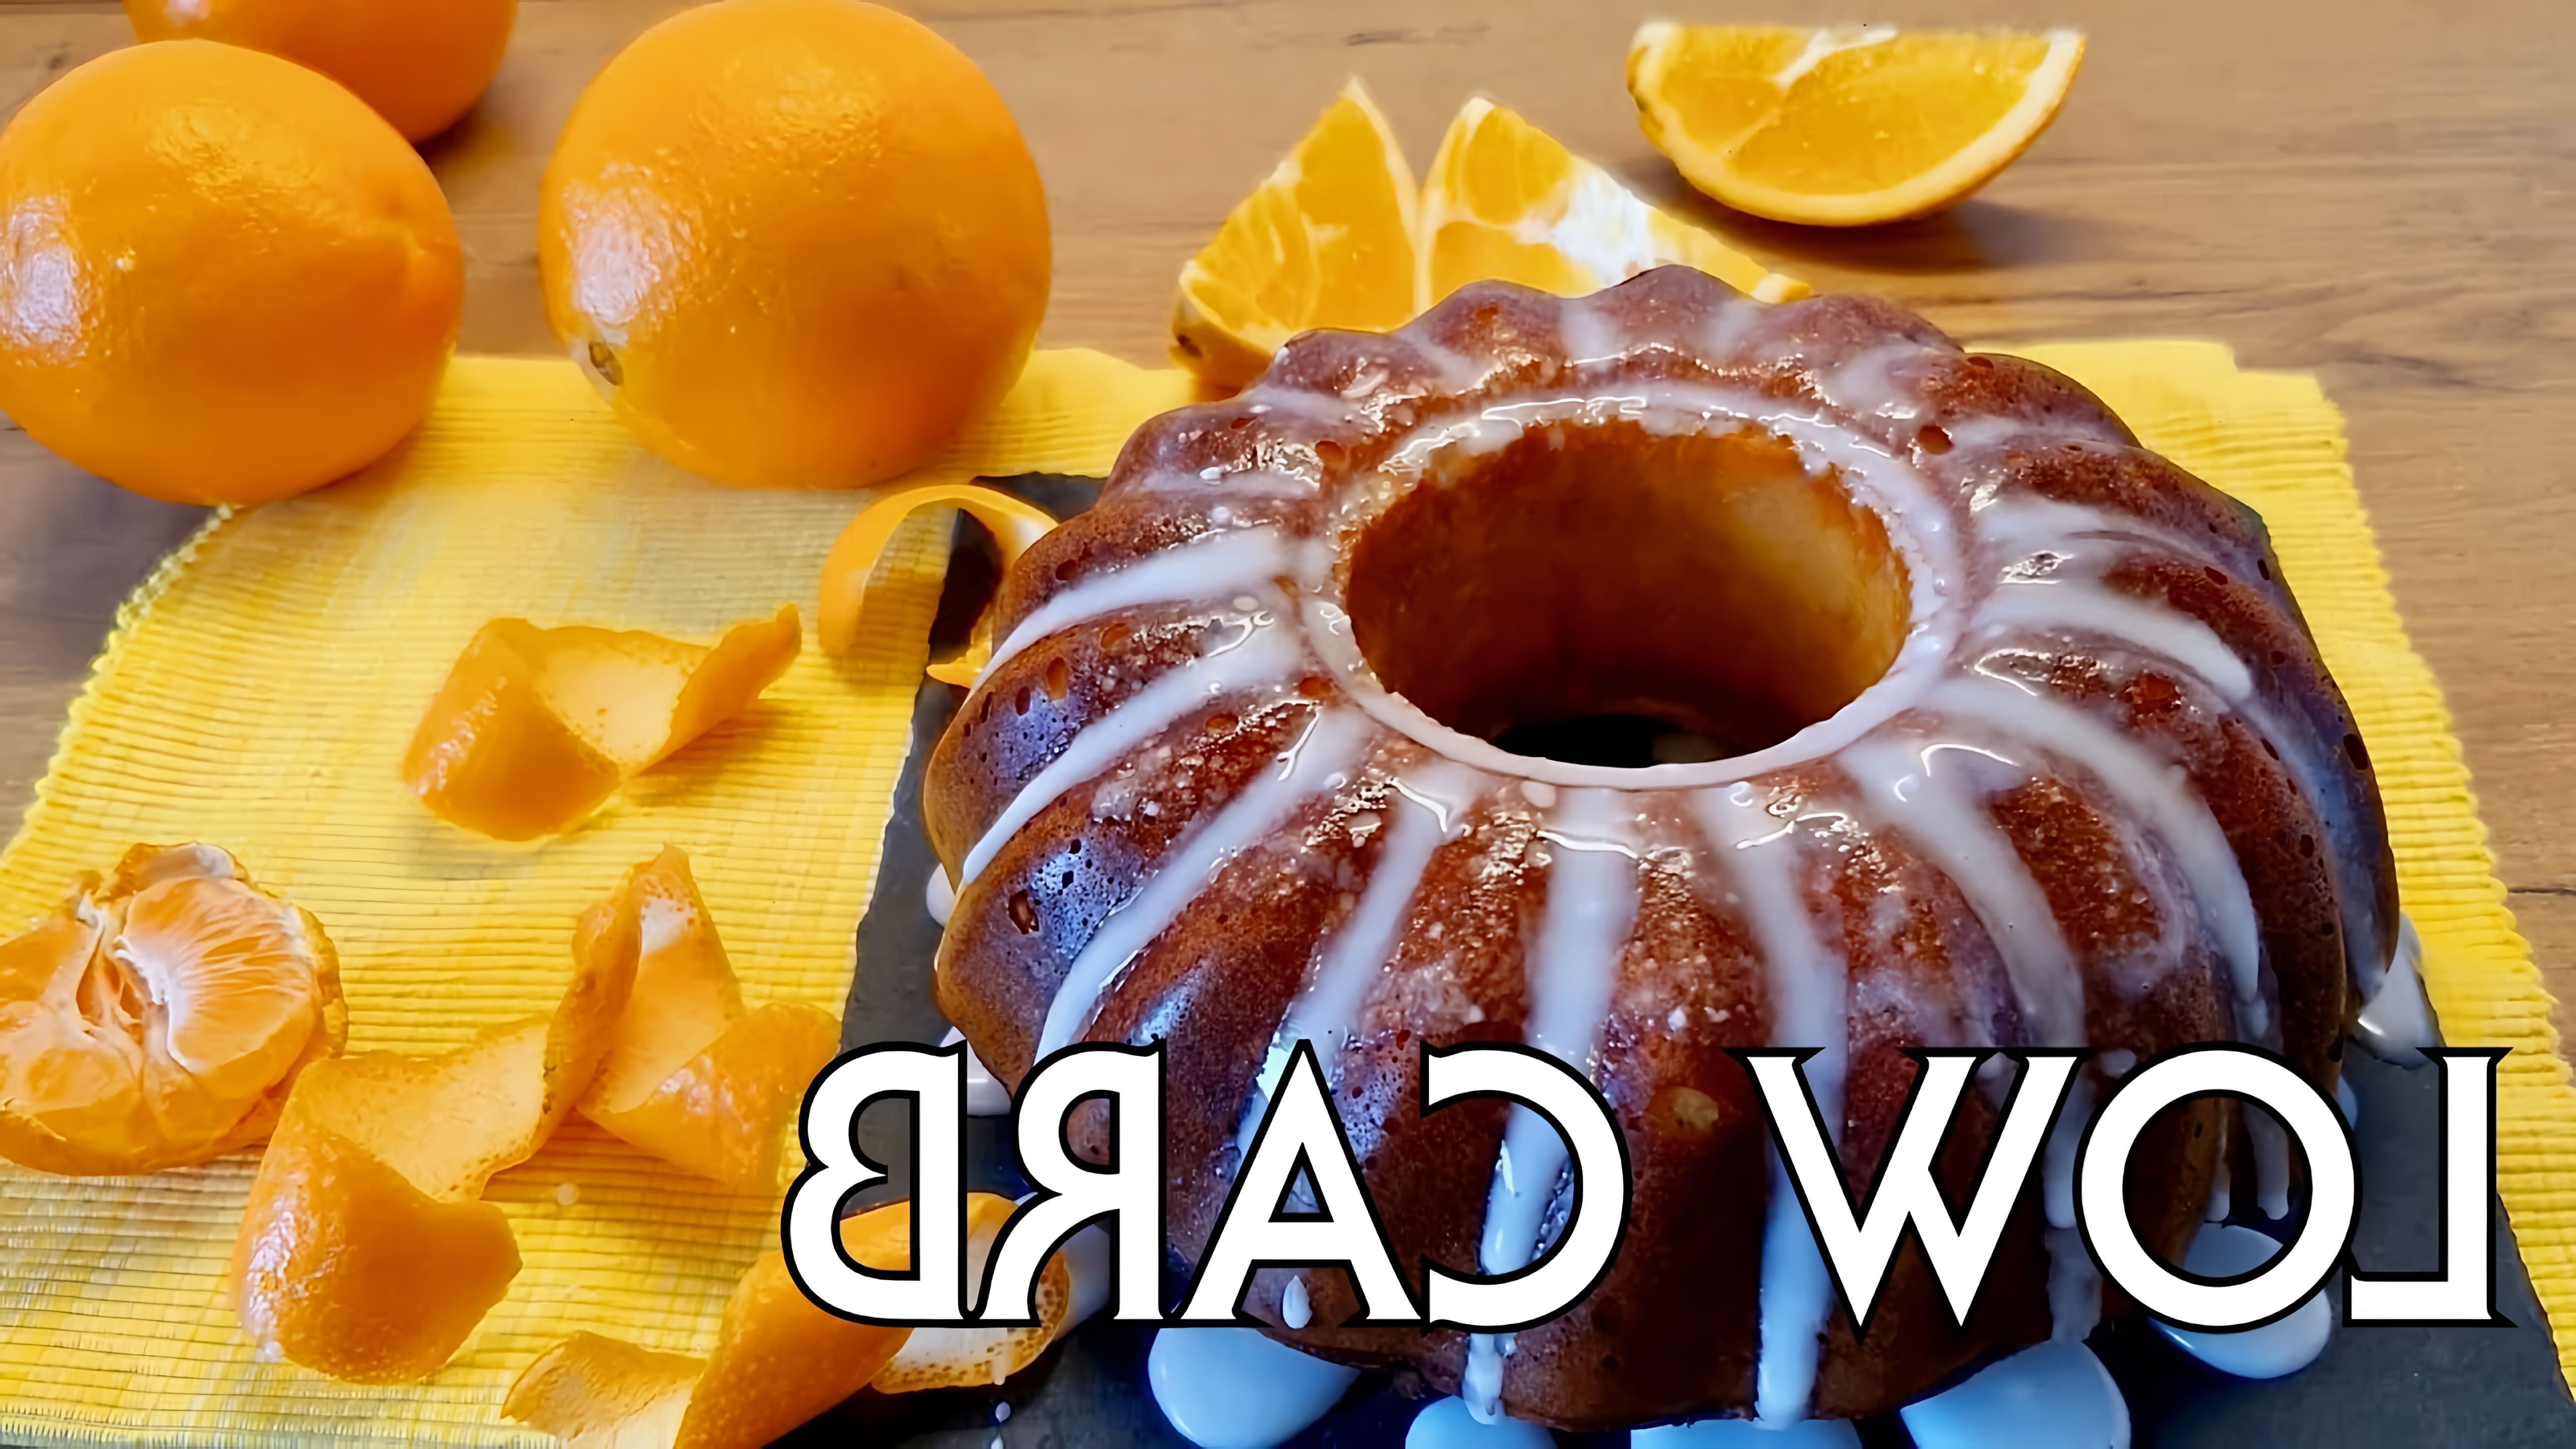 В этом видео демонстрируется рецепт апельсинового кекса без муки, который подходит для людей, придерживающихся кето-диеты